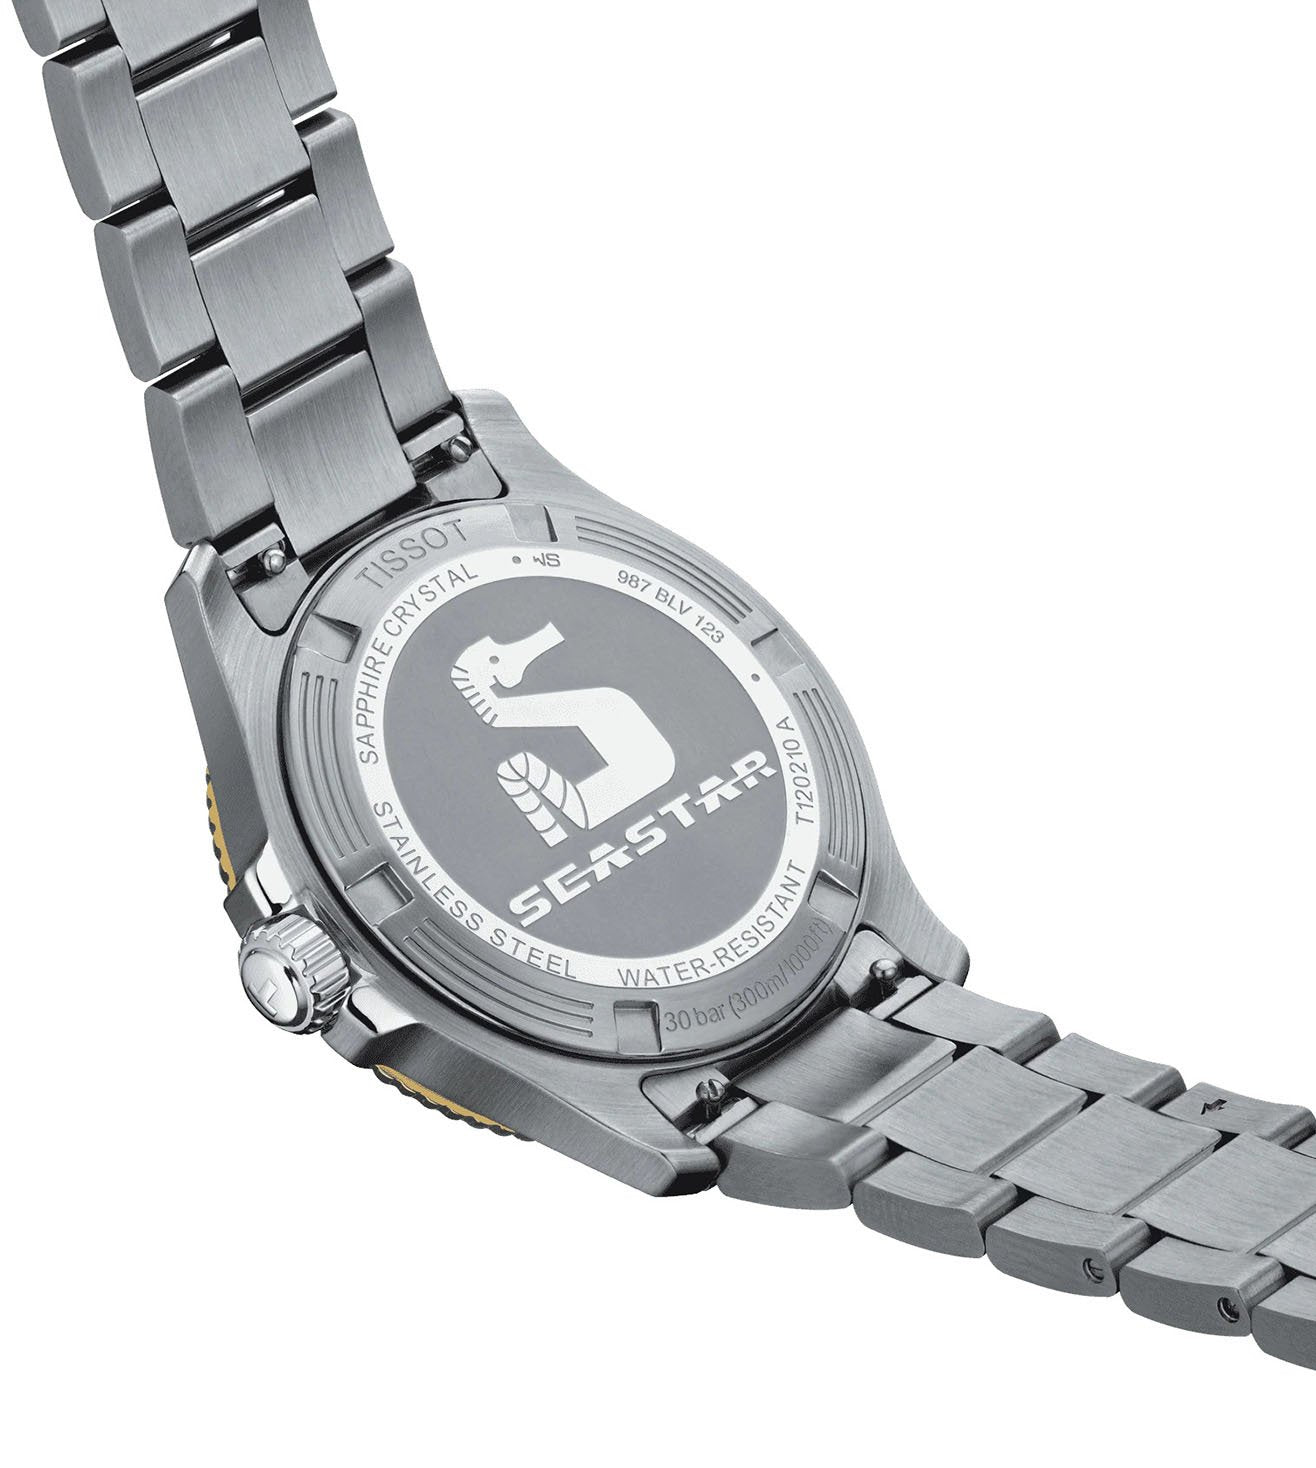 T1202102105100  |  TISSOT T-Sport Seastar 1000 Unisex Watch